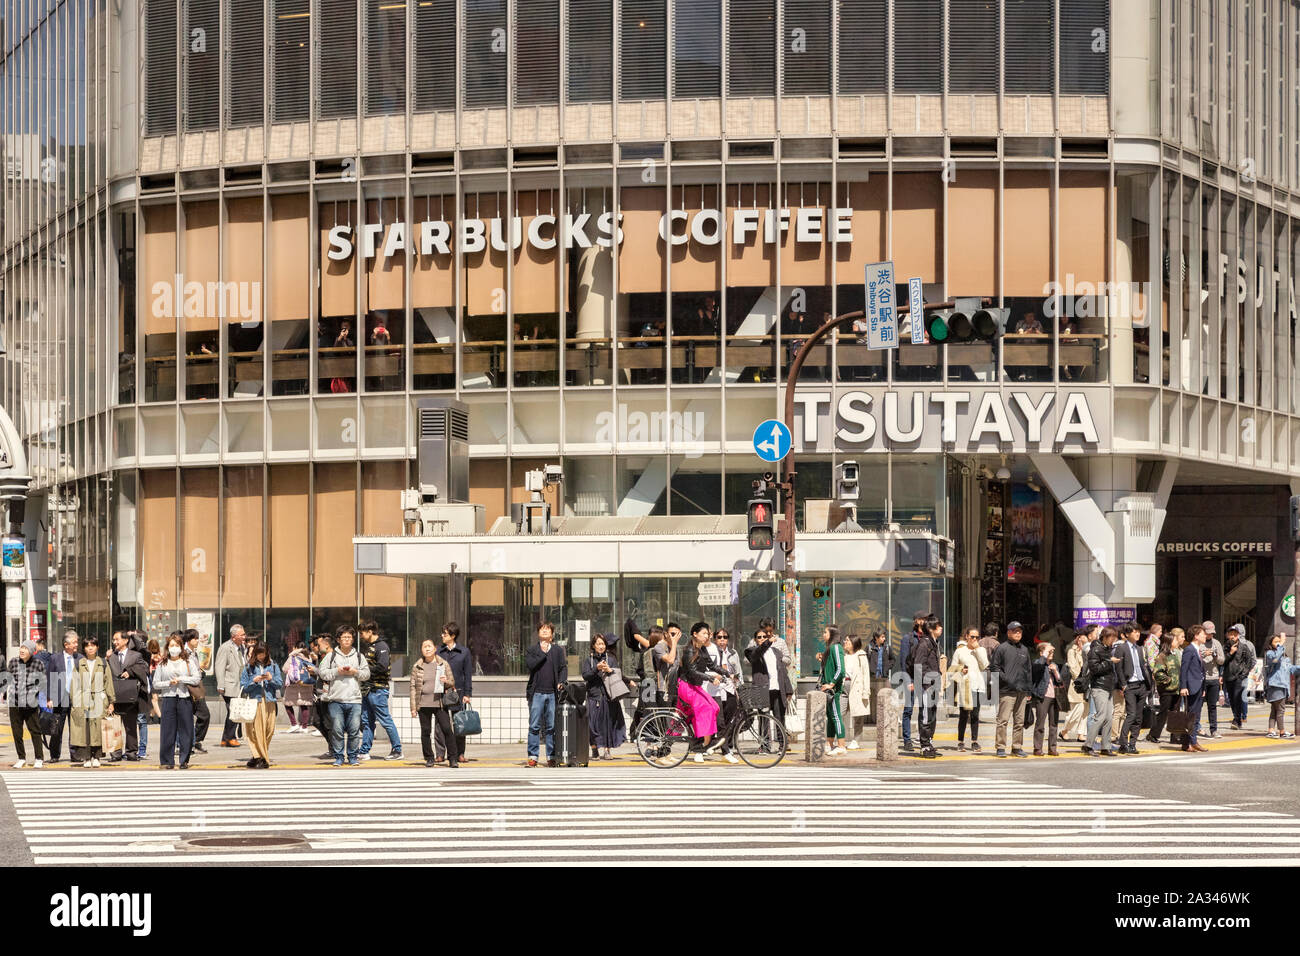 9 avril 2019 : Tokyo, Japon - Nombre de personnes en attente de traverser la route au croisement de Shibuya, avec café Starbucks derrière eux. Banque D'Images